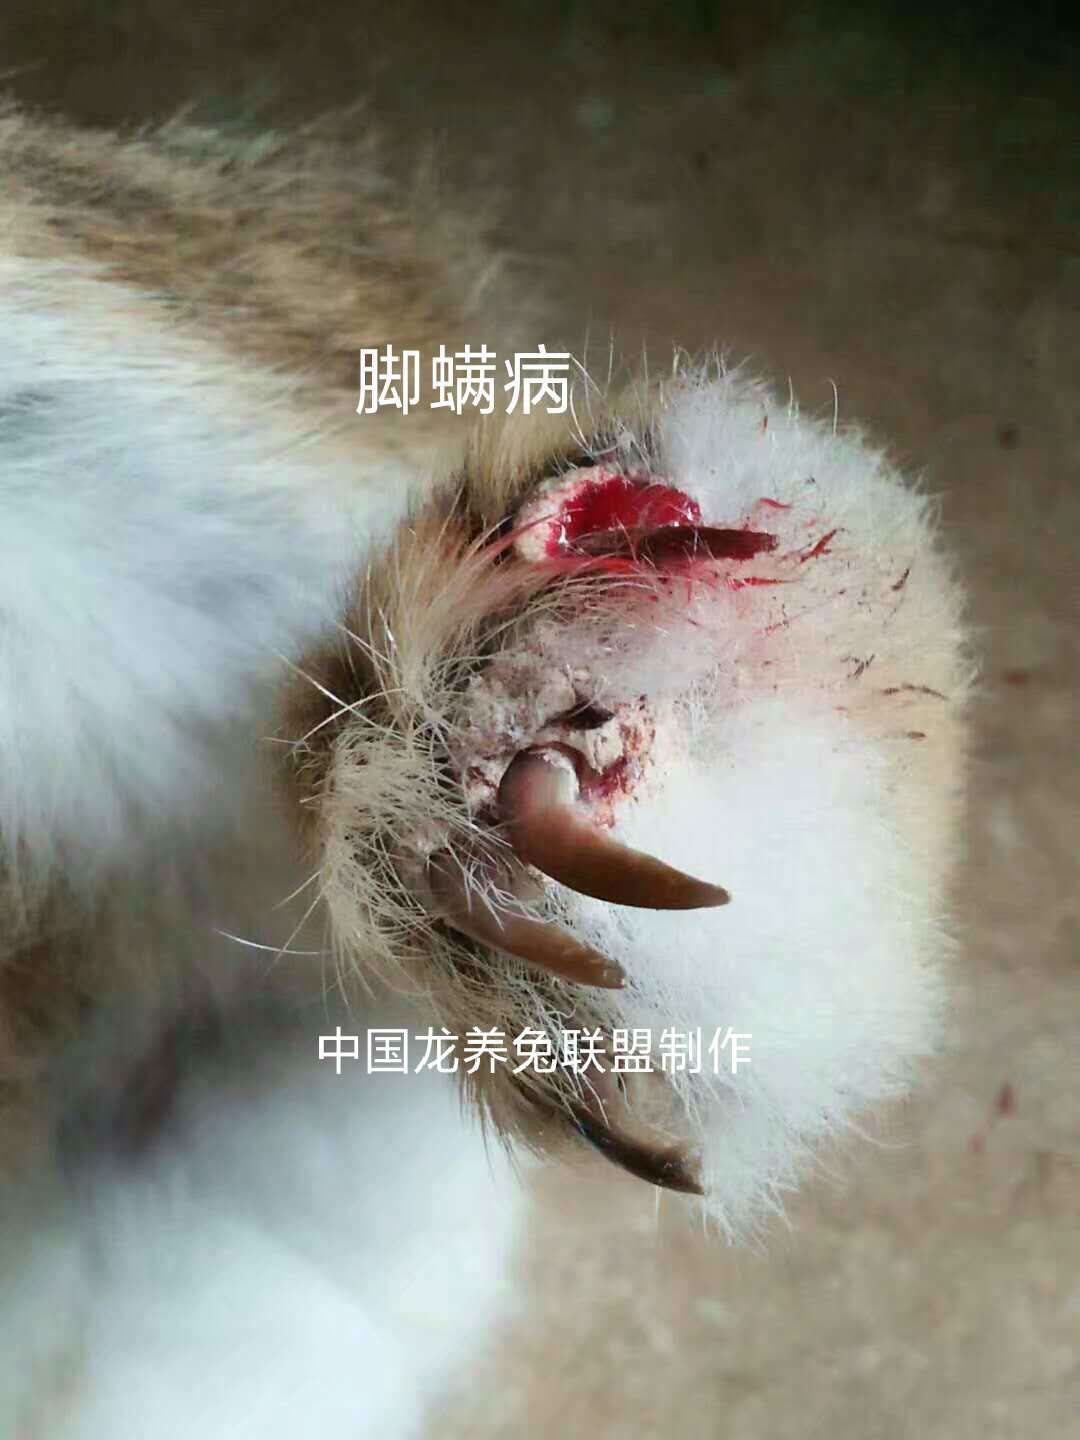 中国龙养兔联盟→参考:家兔螨虫防治方案